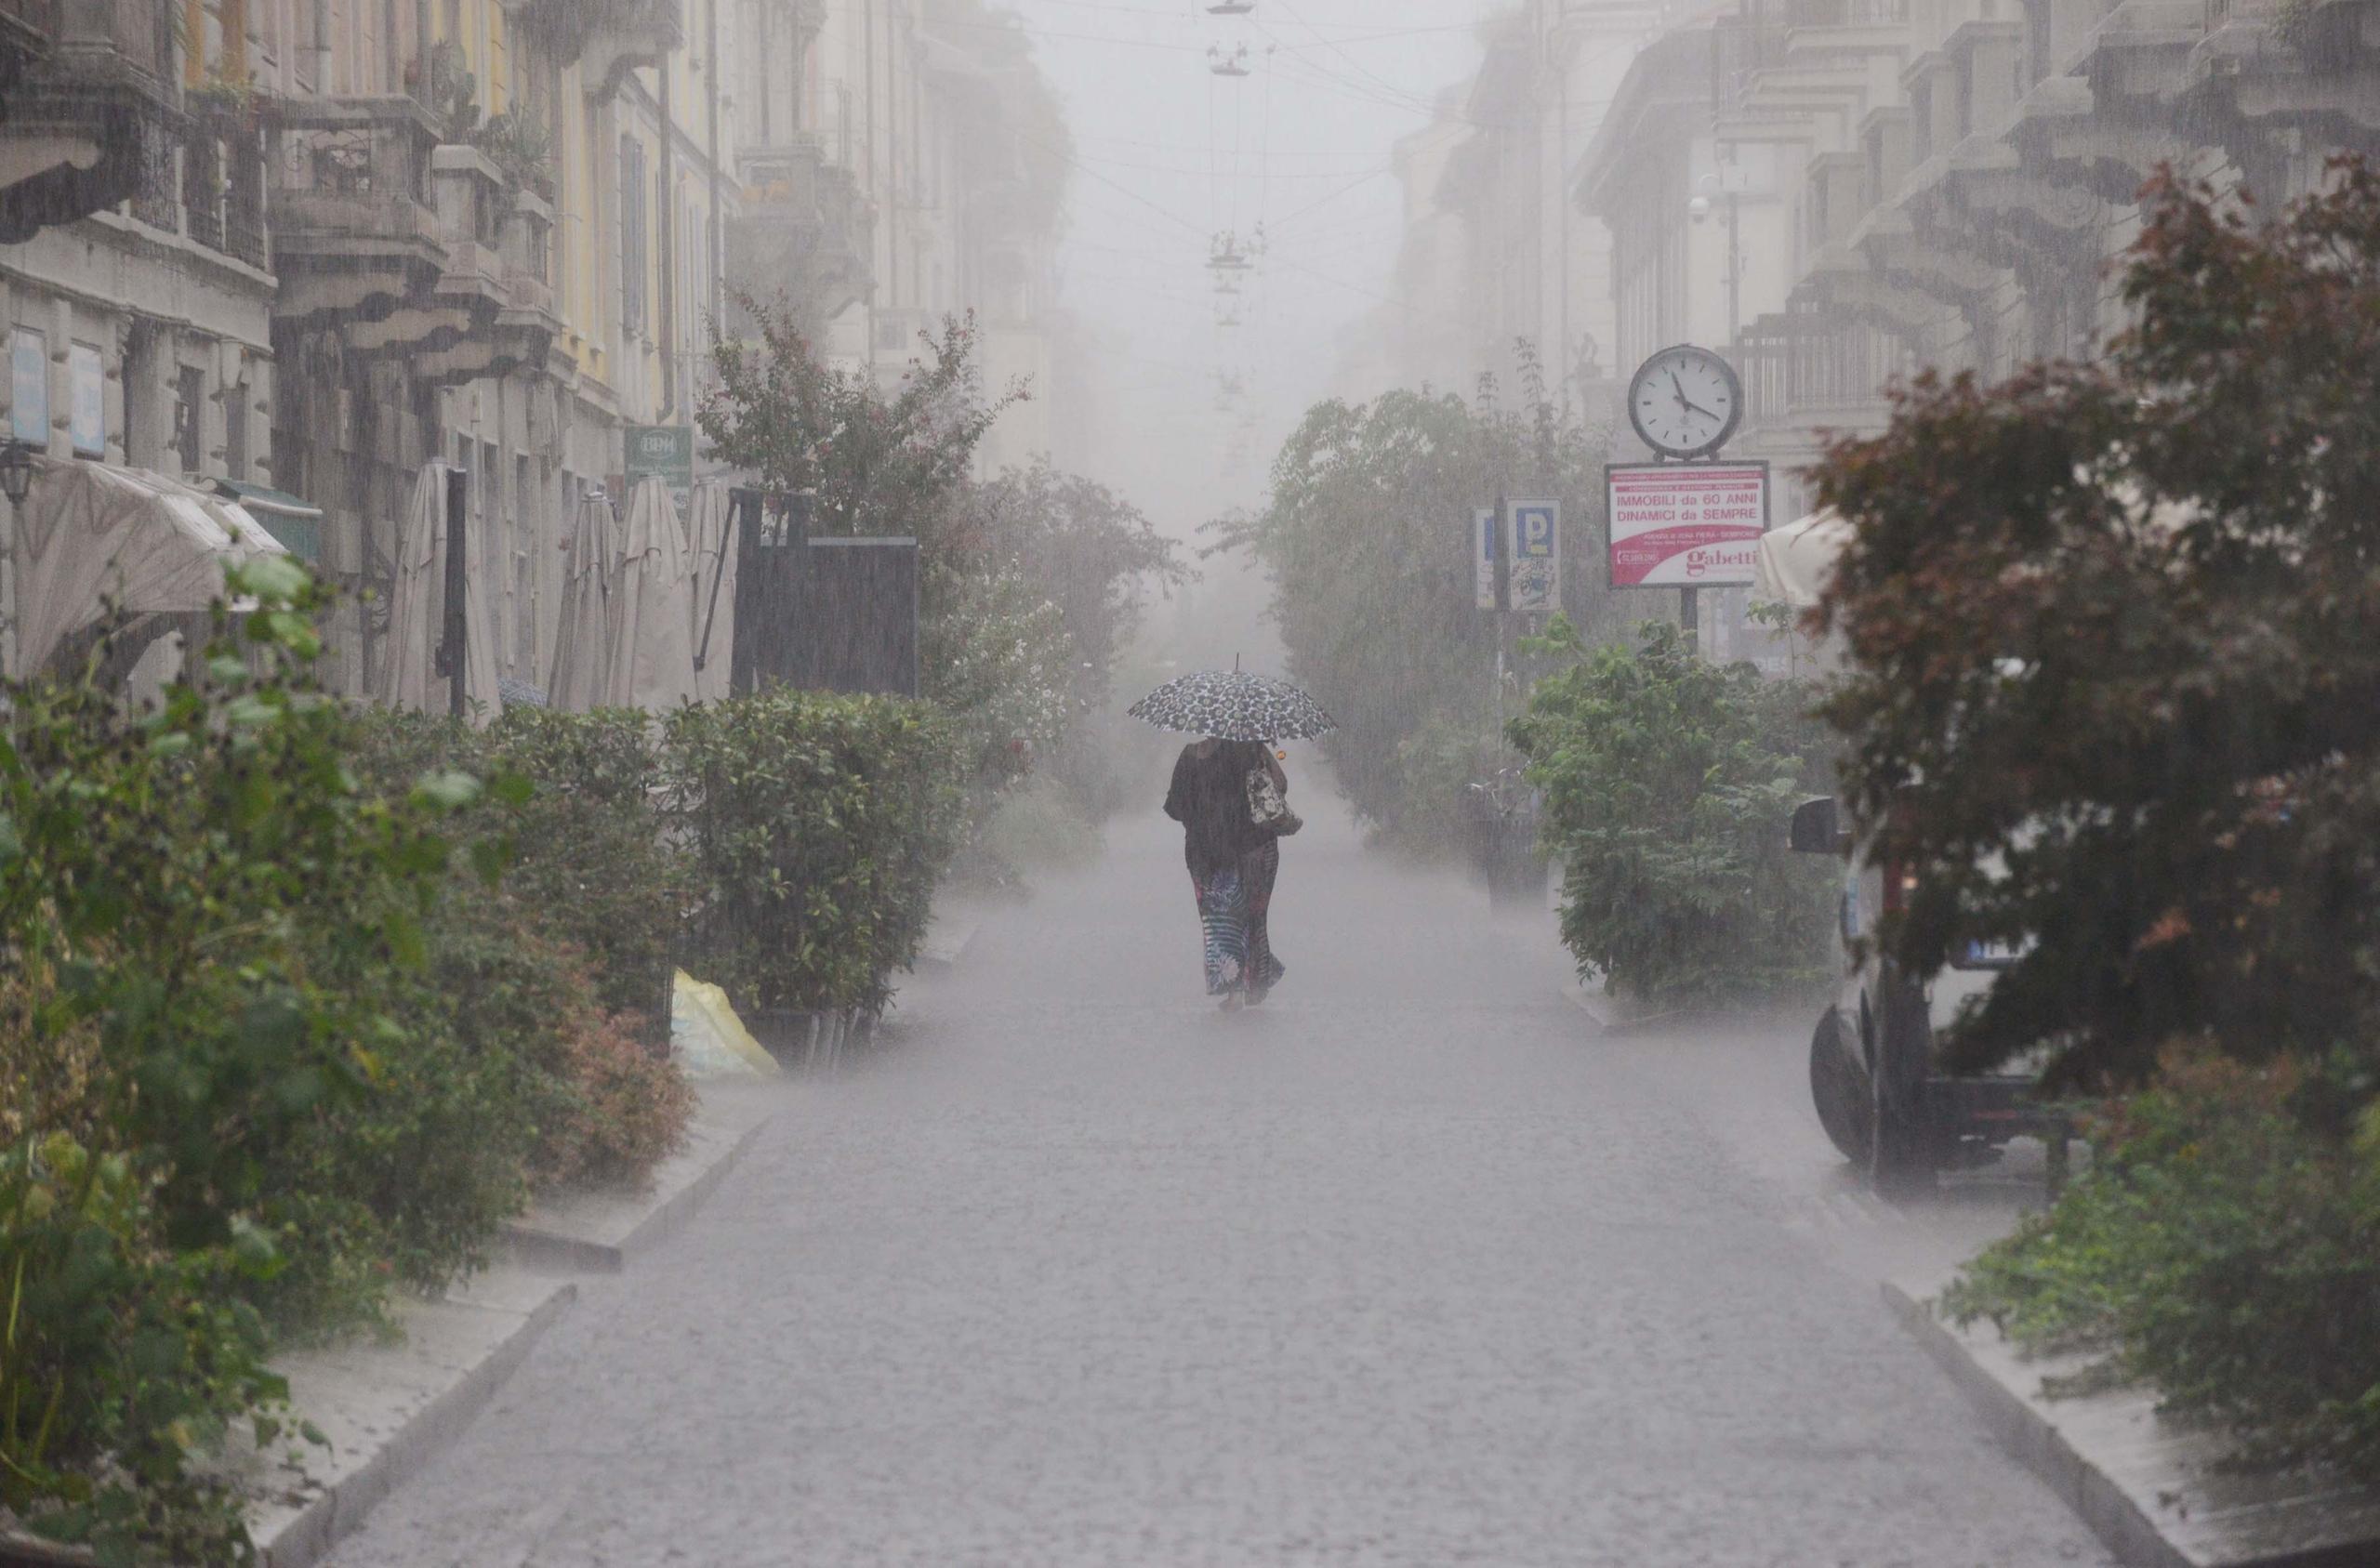 furia del maltempo sull’italia, allerta in 5 regioni. previsioni: pioggia, neve e grandine